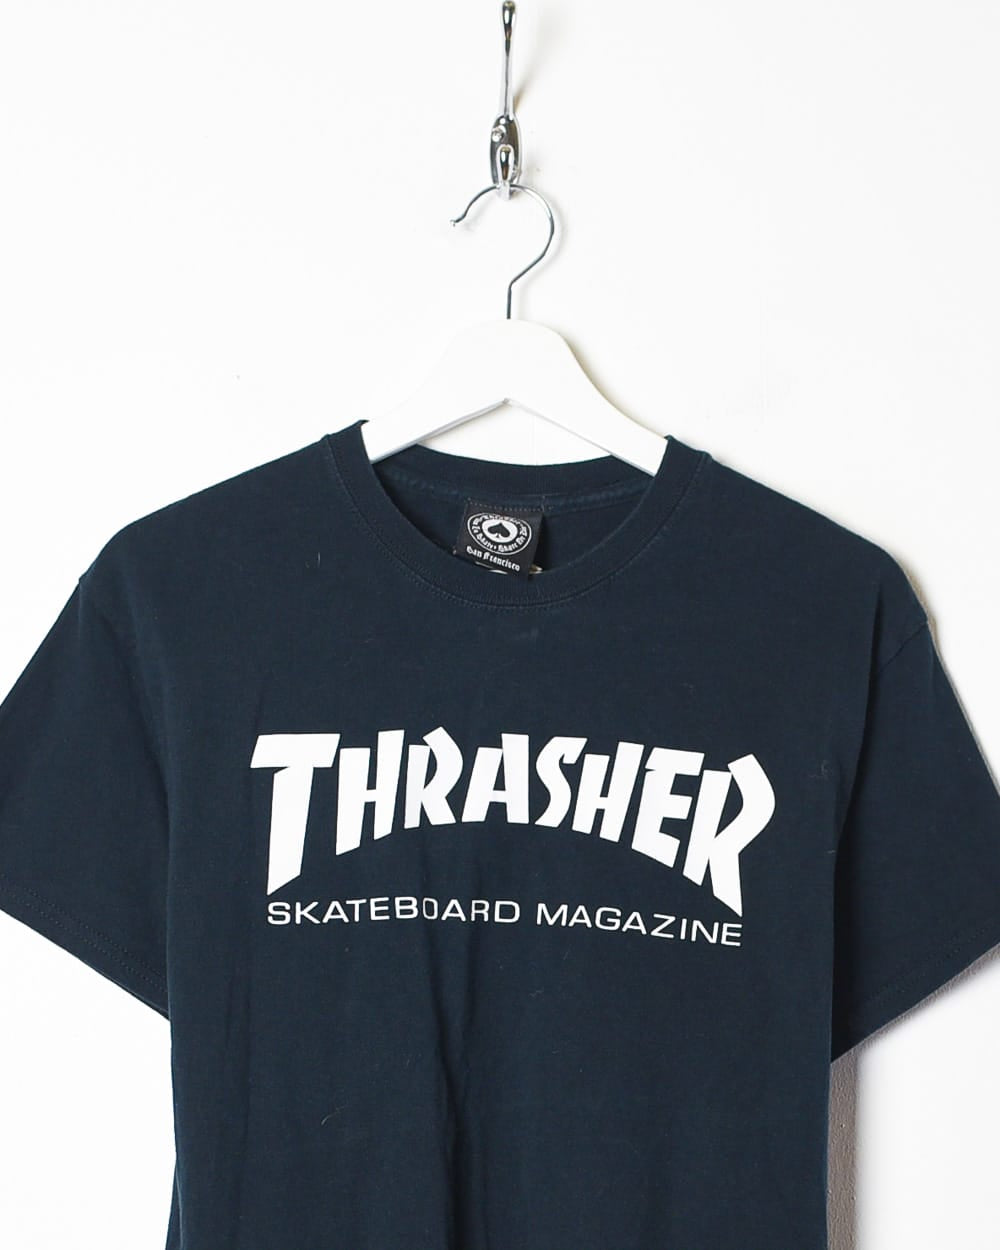 Black Thrasher T-Shirt - Medium